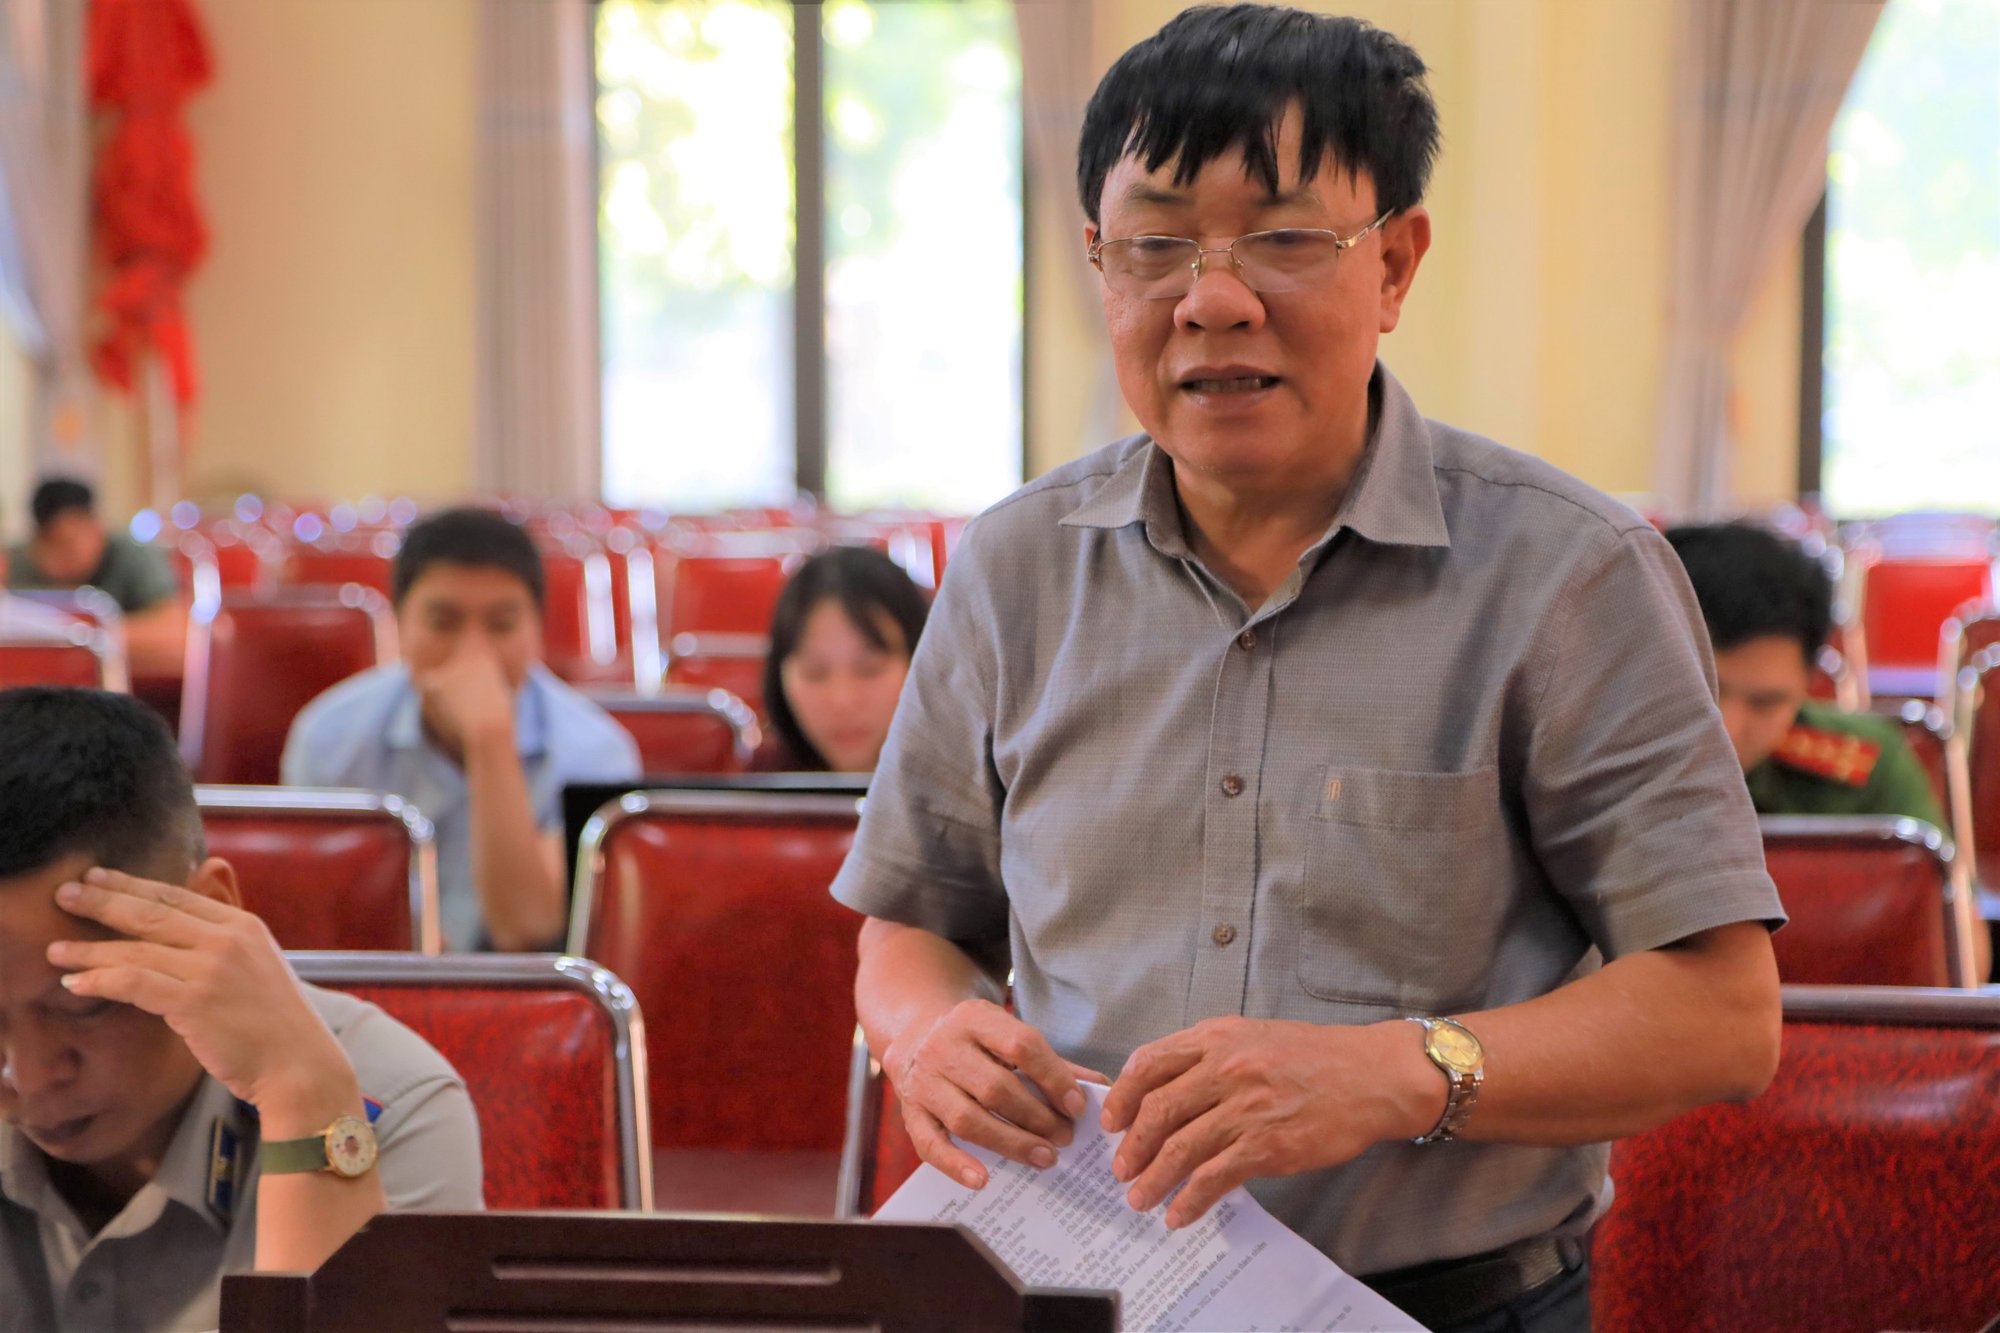 Xã Tiền Phong tổ chức cắm mốc giới, chỉ giới thửa đất số 33, tờ bản đồ 20 theo Quyết định số 943/QĐ-CT của Chủ tịch UBND tỉnh Vĩnh Phúc - Ảnh 2.